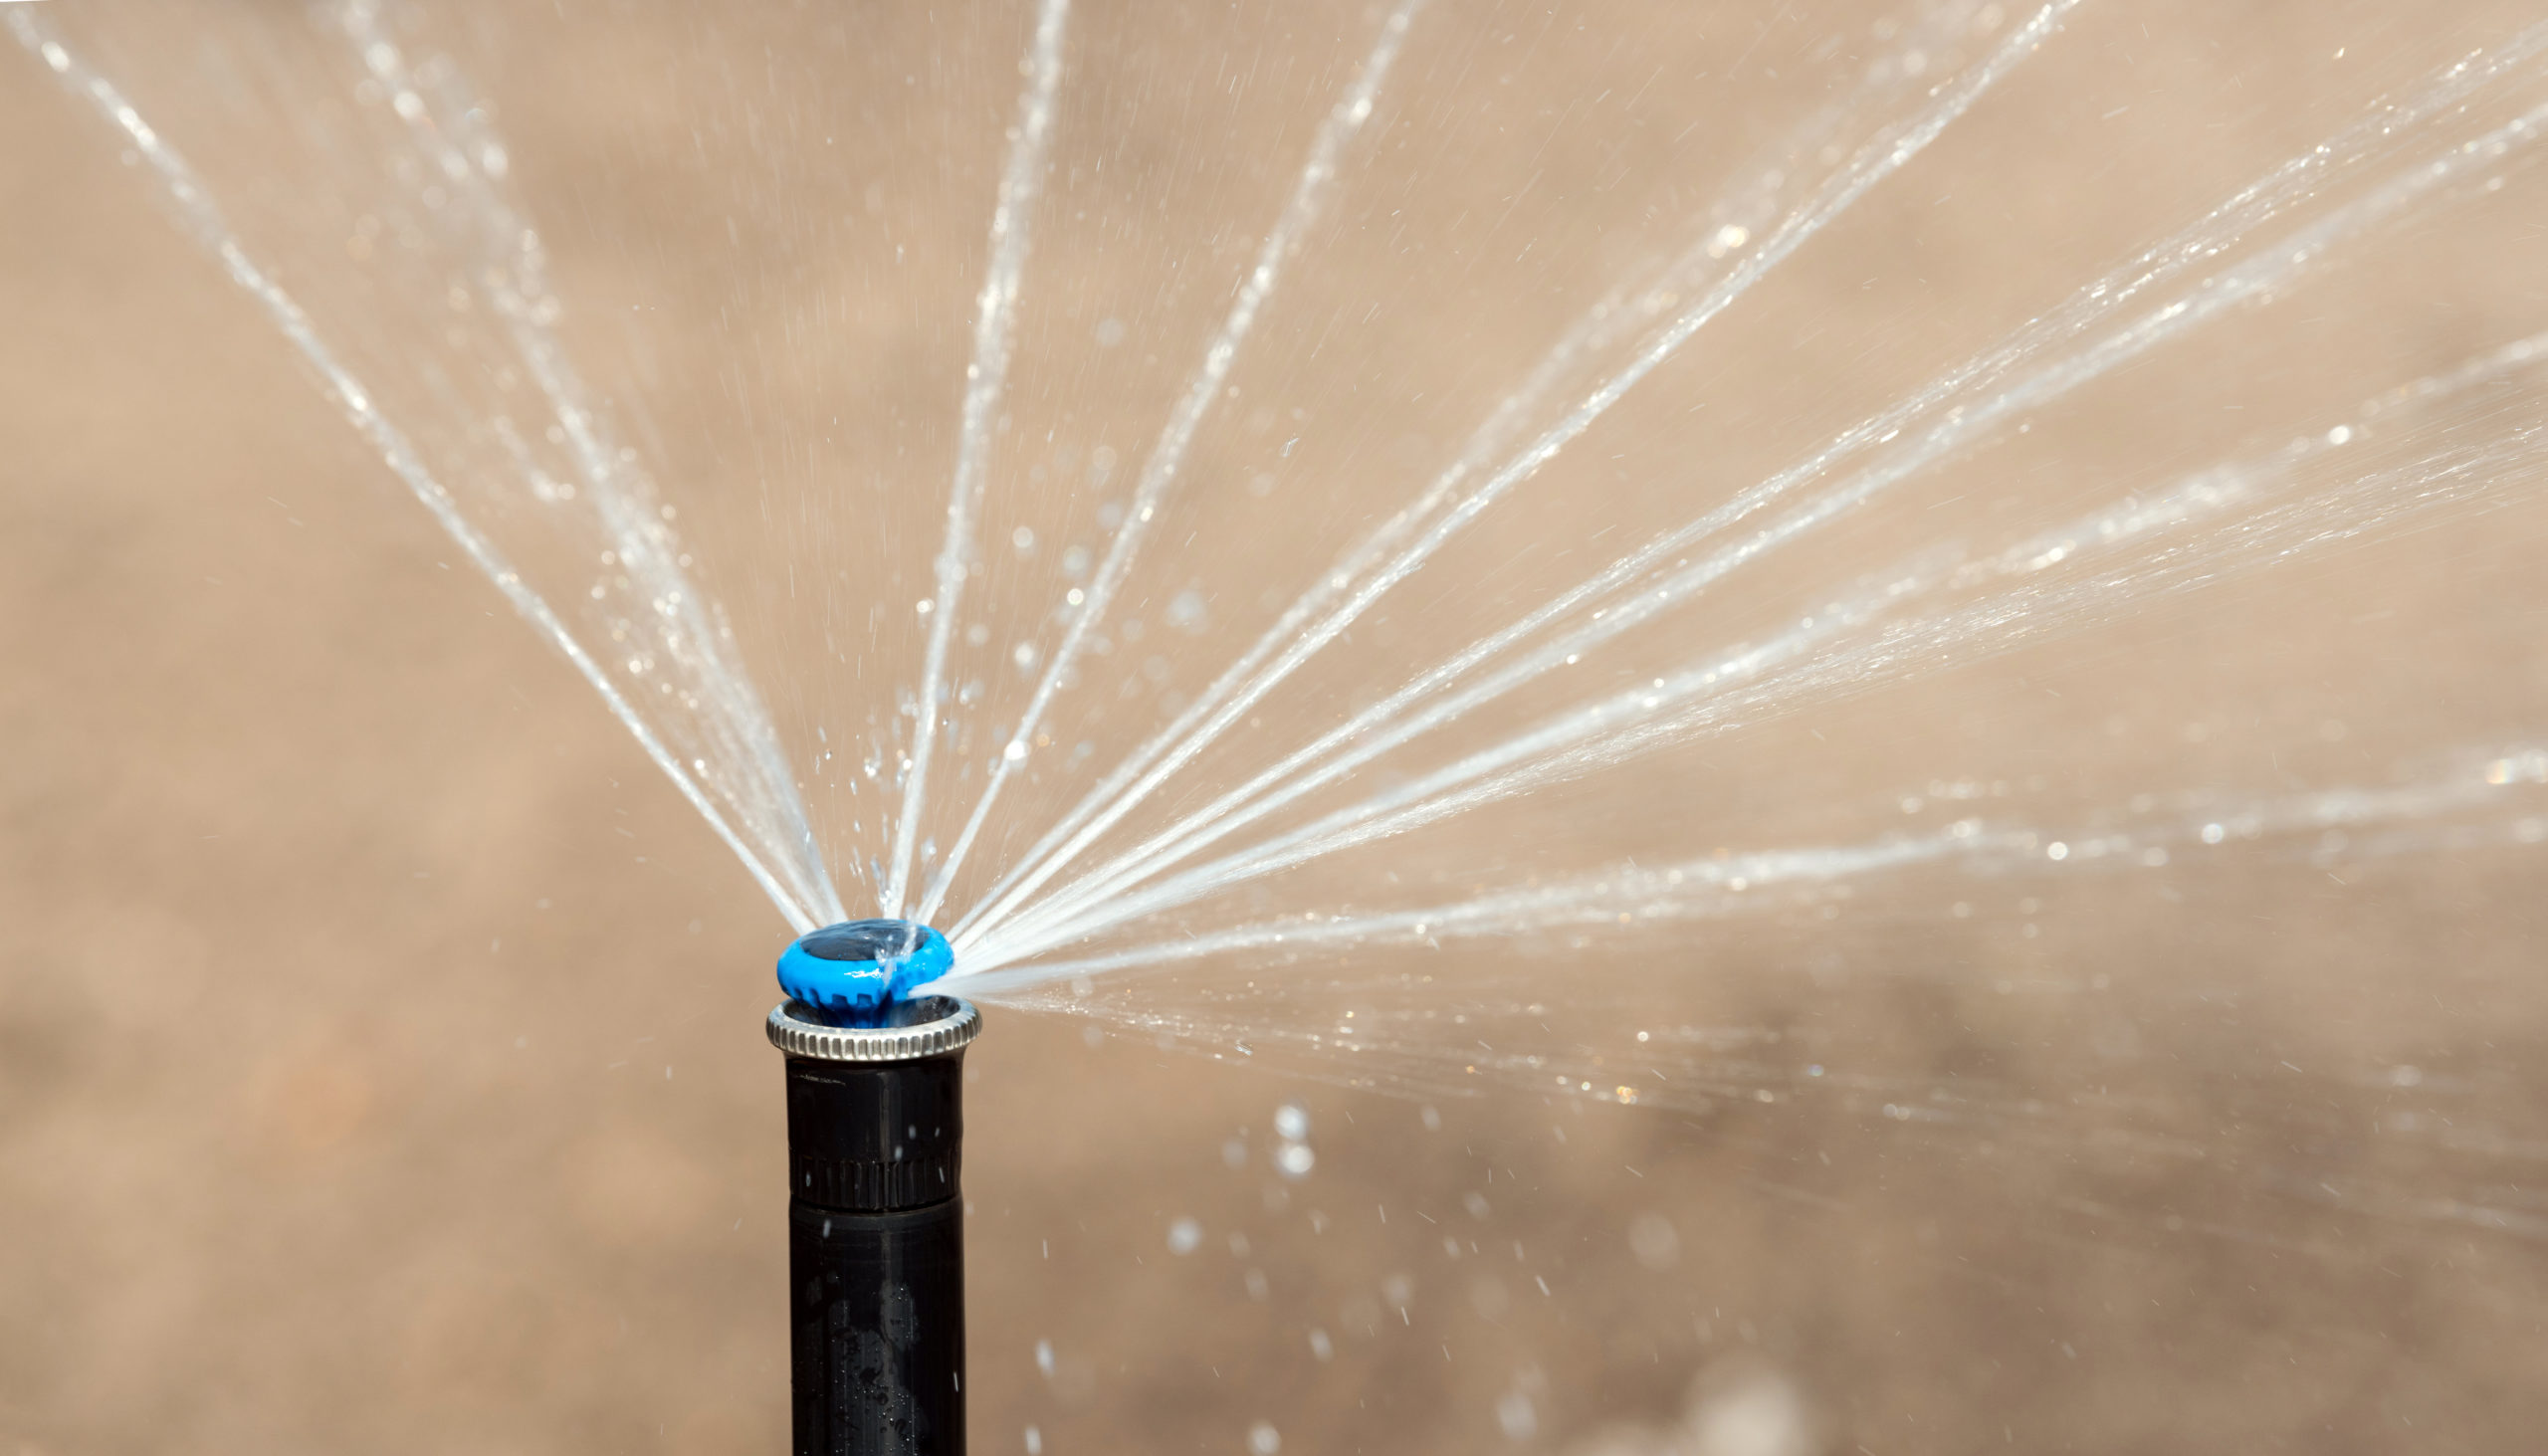 Sprinkler In Action Watering